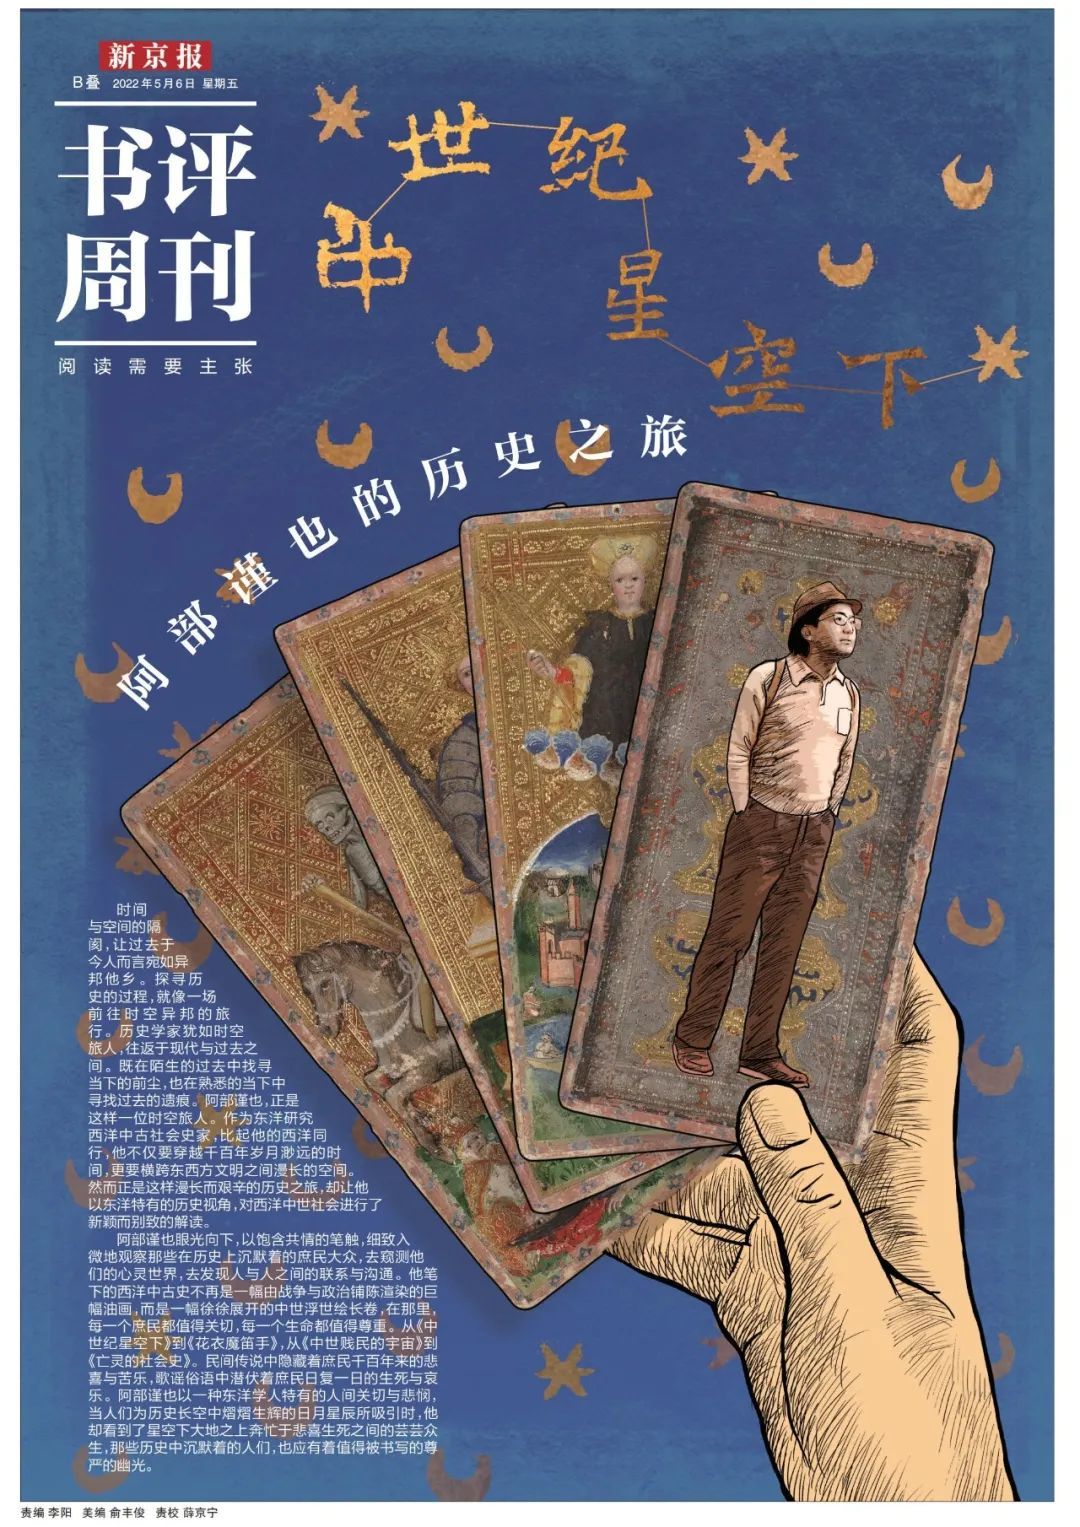 本文出自《新京报·书评周刊》5月6日专题《中世纪星空下：阿部谨也的历史之旅》的B04-B05。